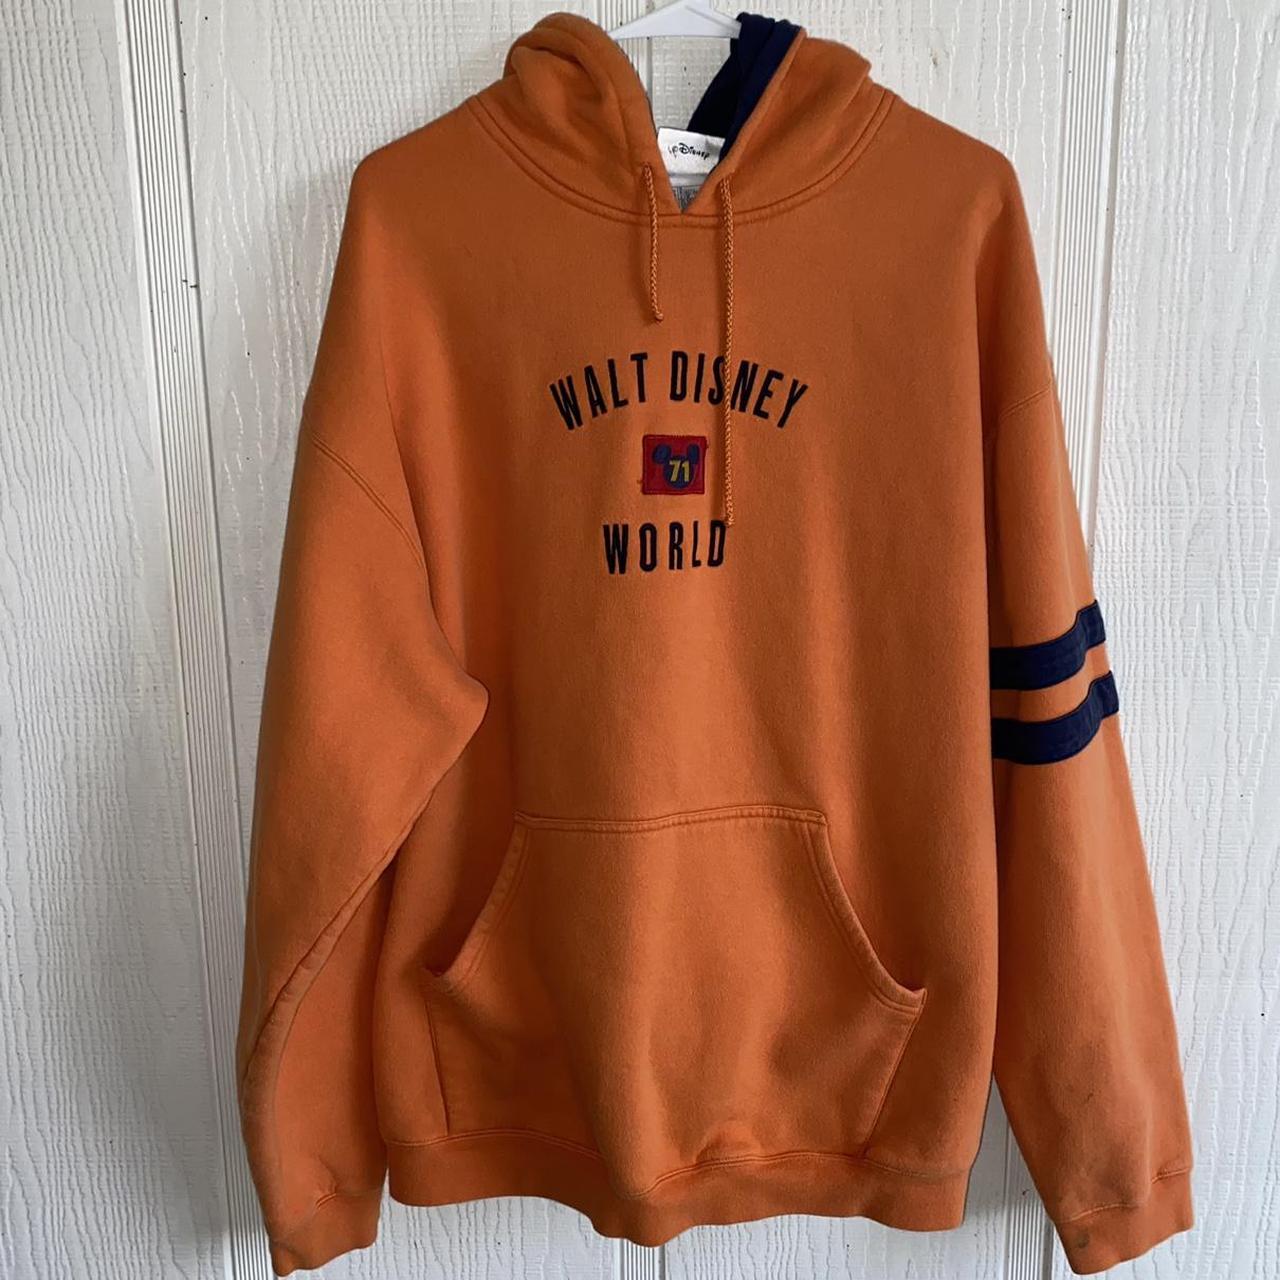 Product Image 1 - Disney world orange hoodie
Size xxl
FREE